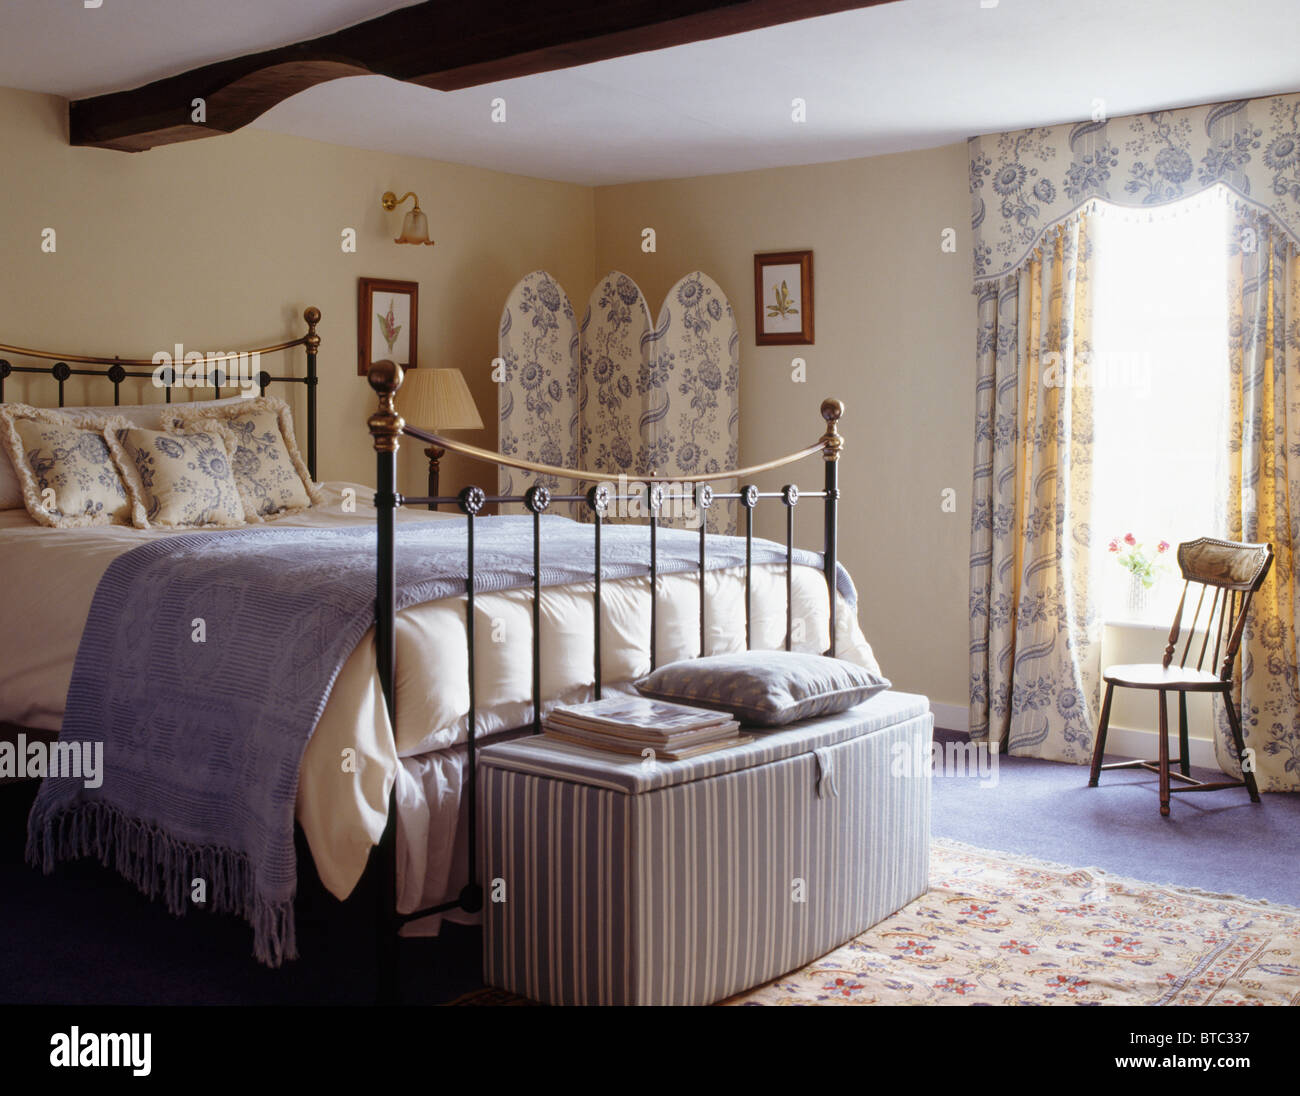 Ottoman rayé ci-dessous lit en cuivre avec jet bleu pâle en pays chambre avec toile blanc +bleu-de-Jouy paravent et rideaux Banque D'Images